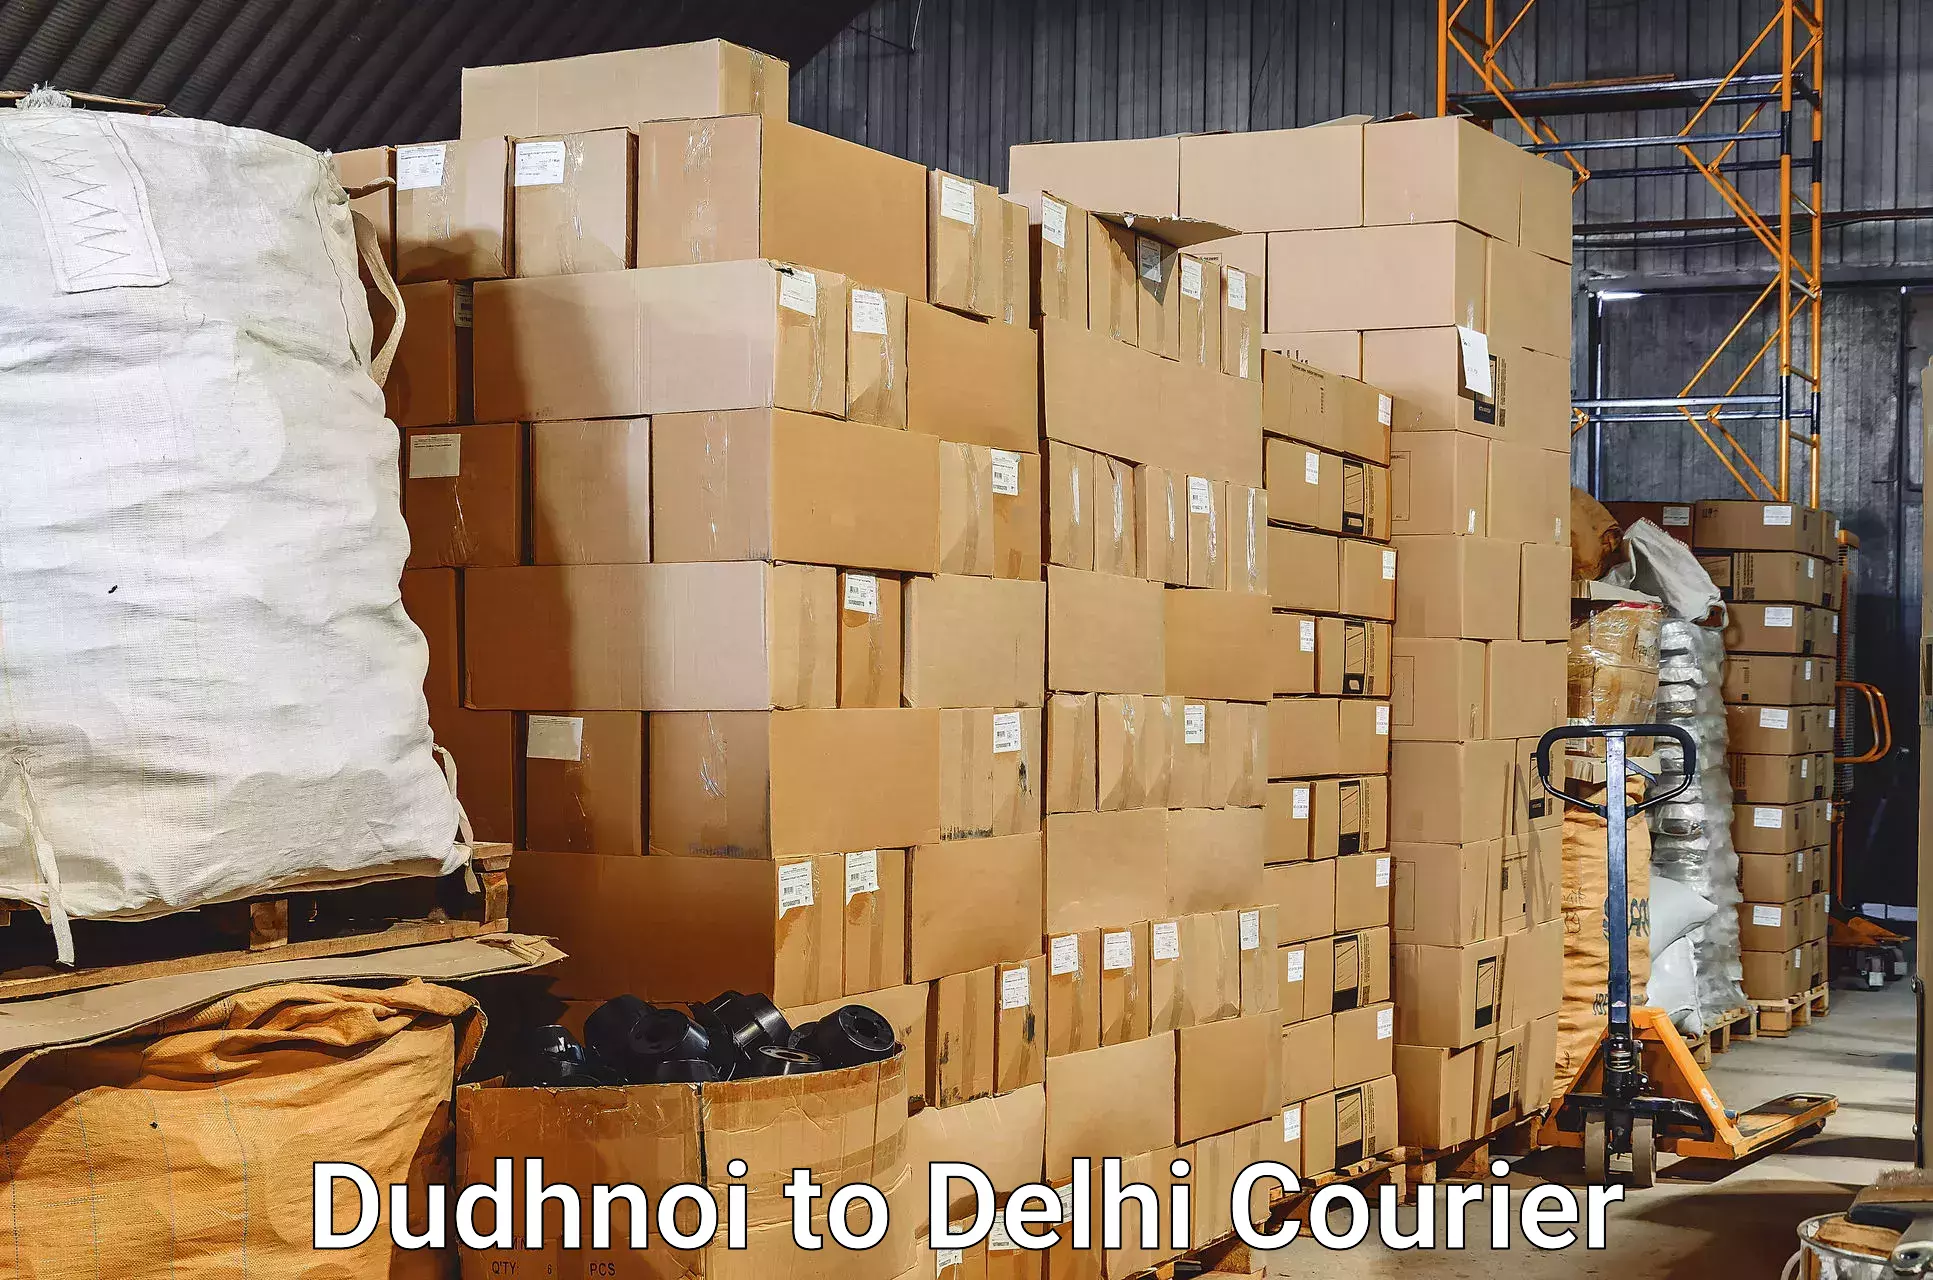 Baggage transport technology Dudhnoi to Ramesh Nagar